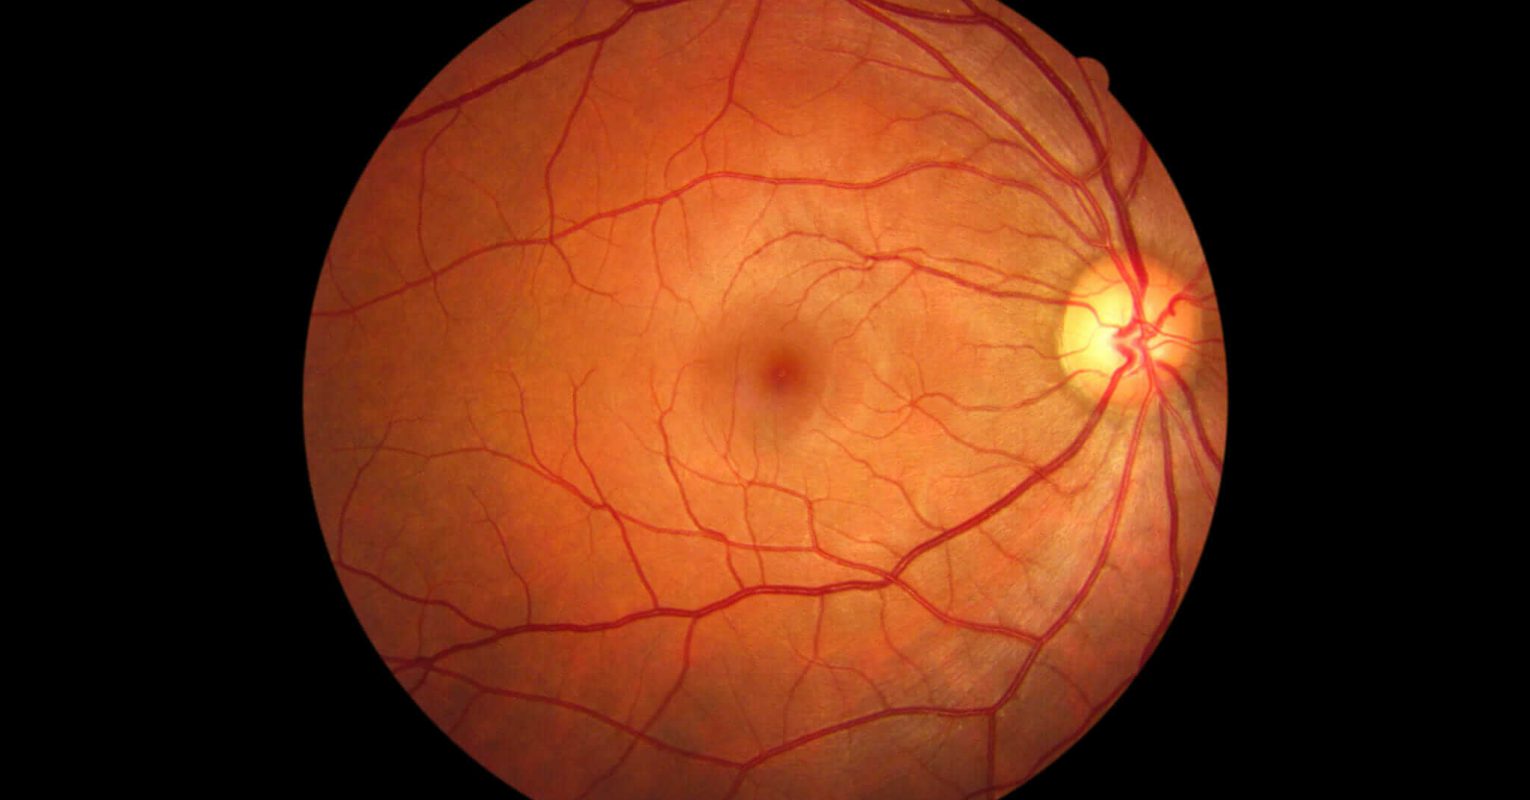 vision loss normal lens normal retina